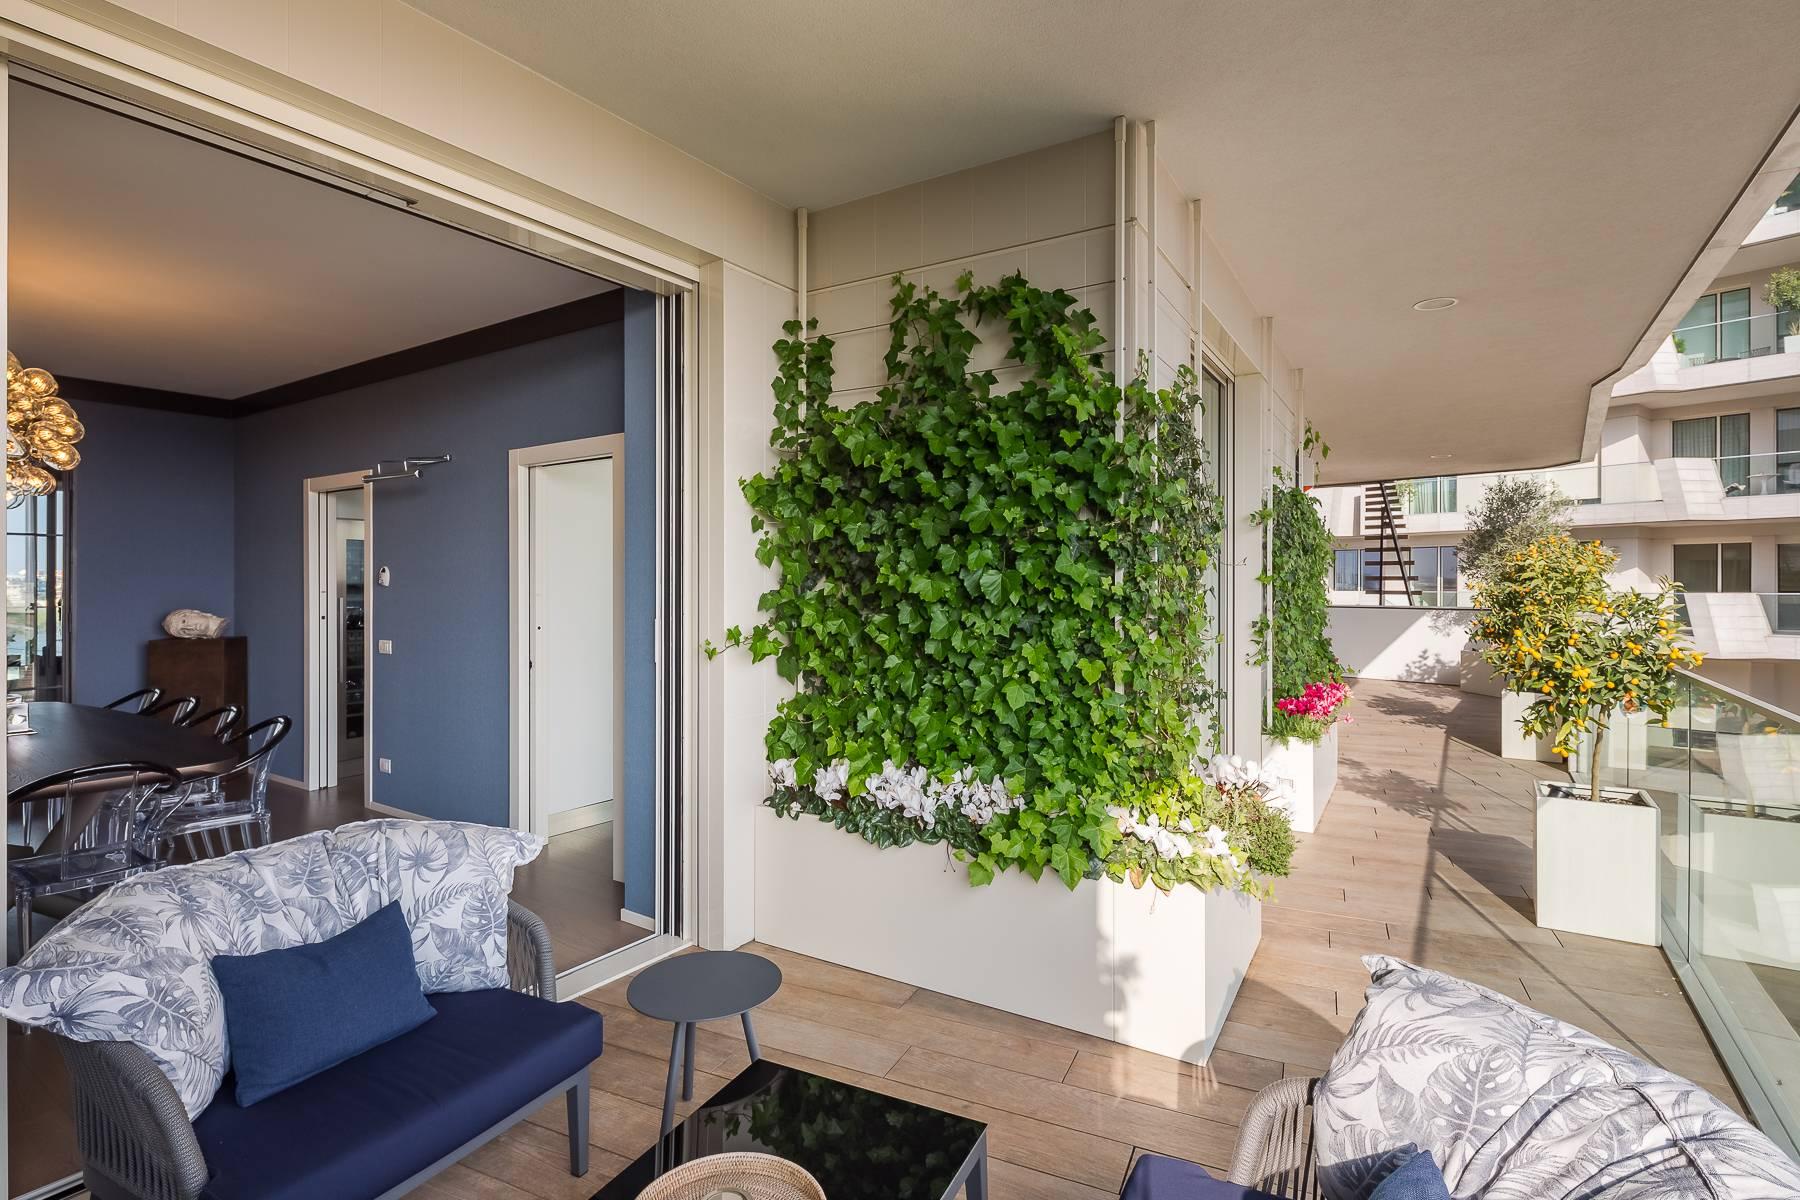 Wunderschöne möblierte Design-Wohnung mit Terrassen im CitylIfe Stadtviertel - 40